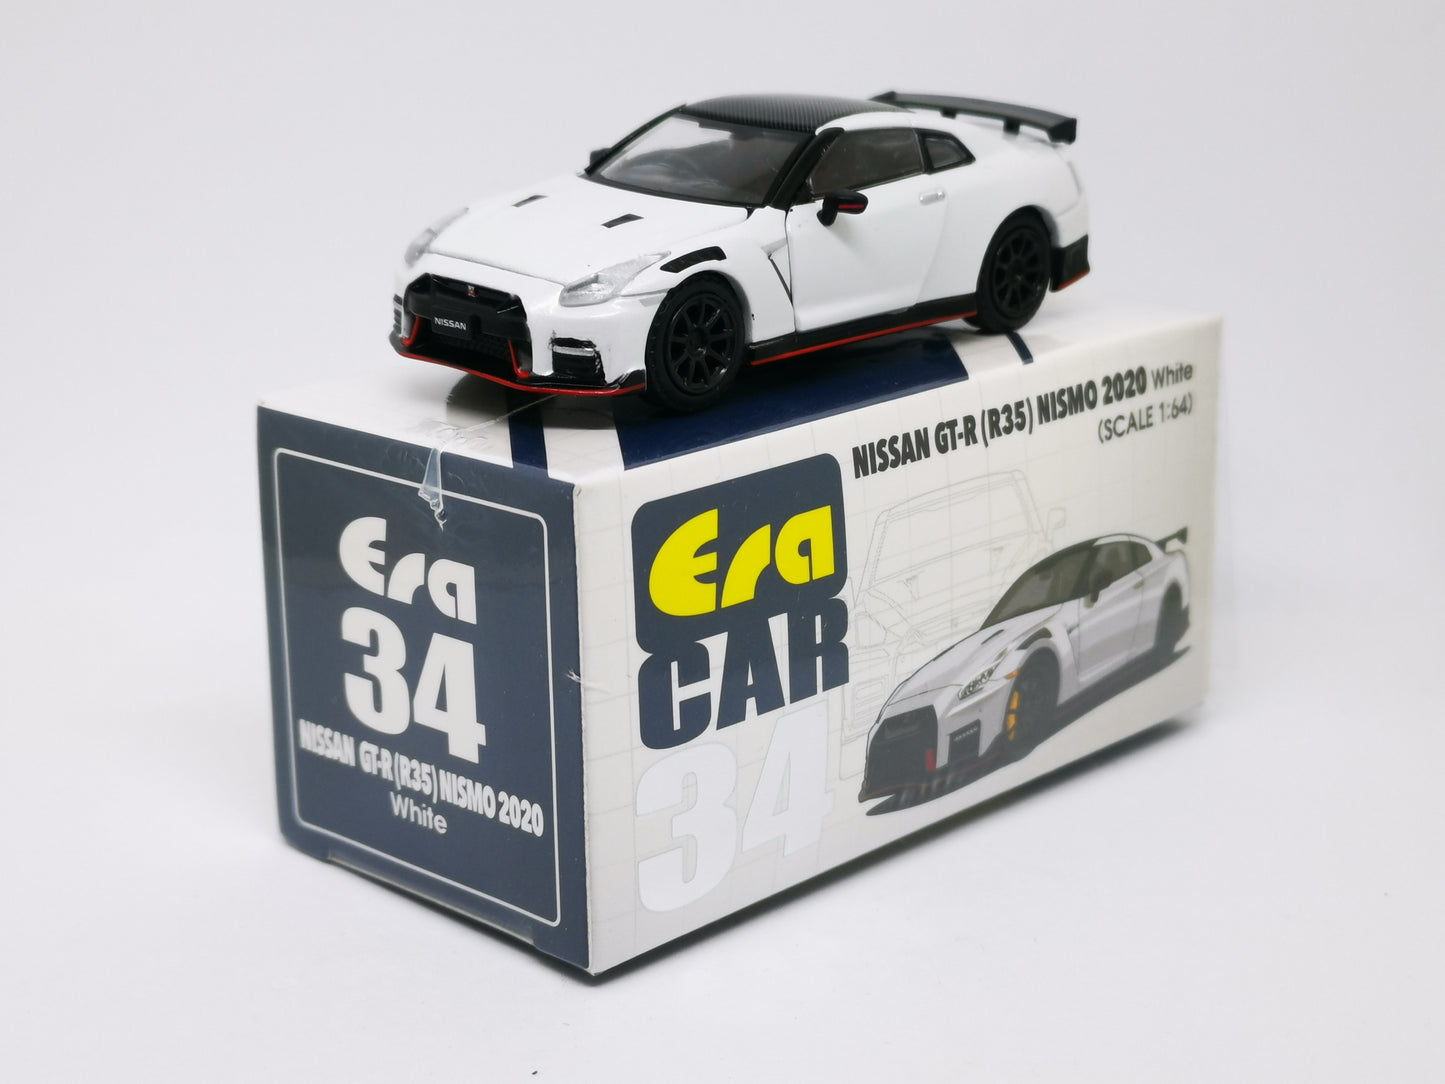 ERA Car #34 Nissan GT-R(R35) Nismo 2020 White Scale 1:64